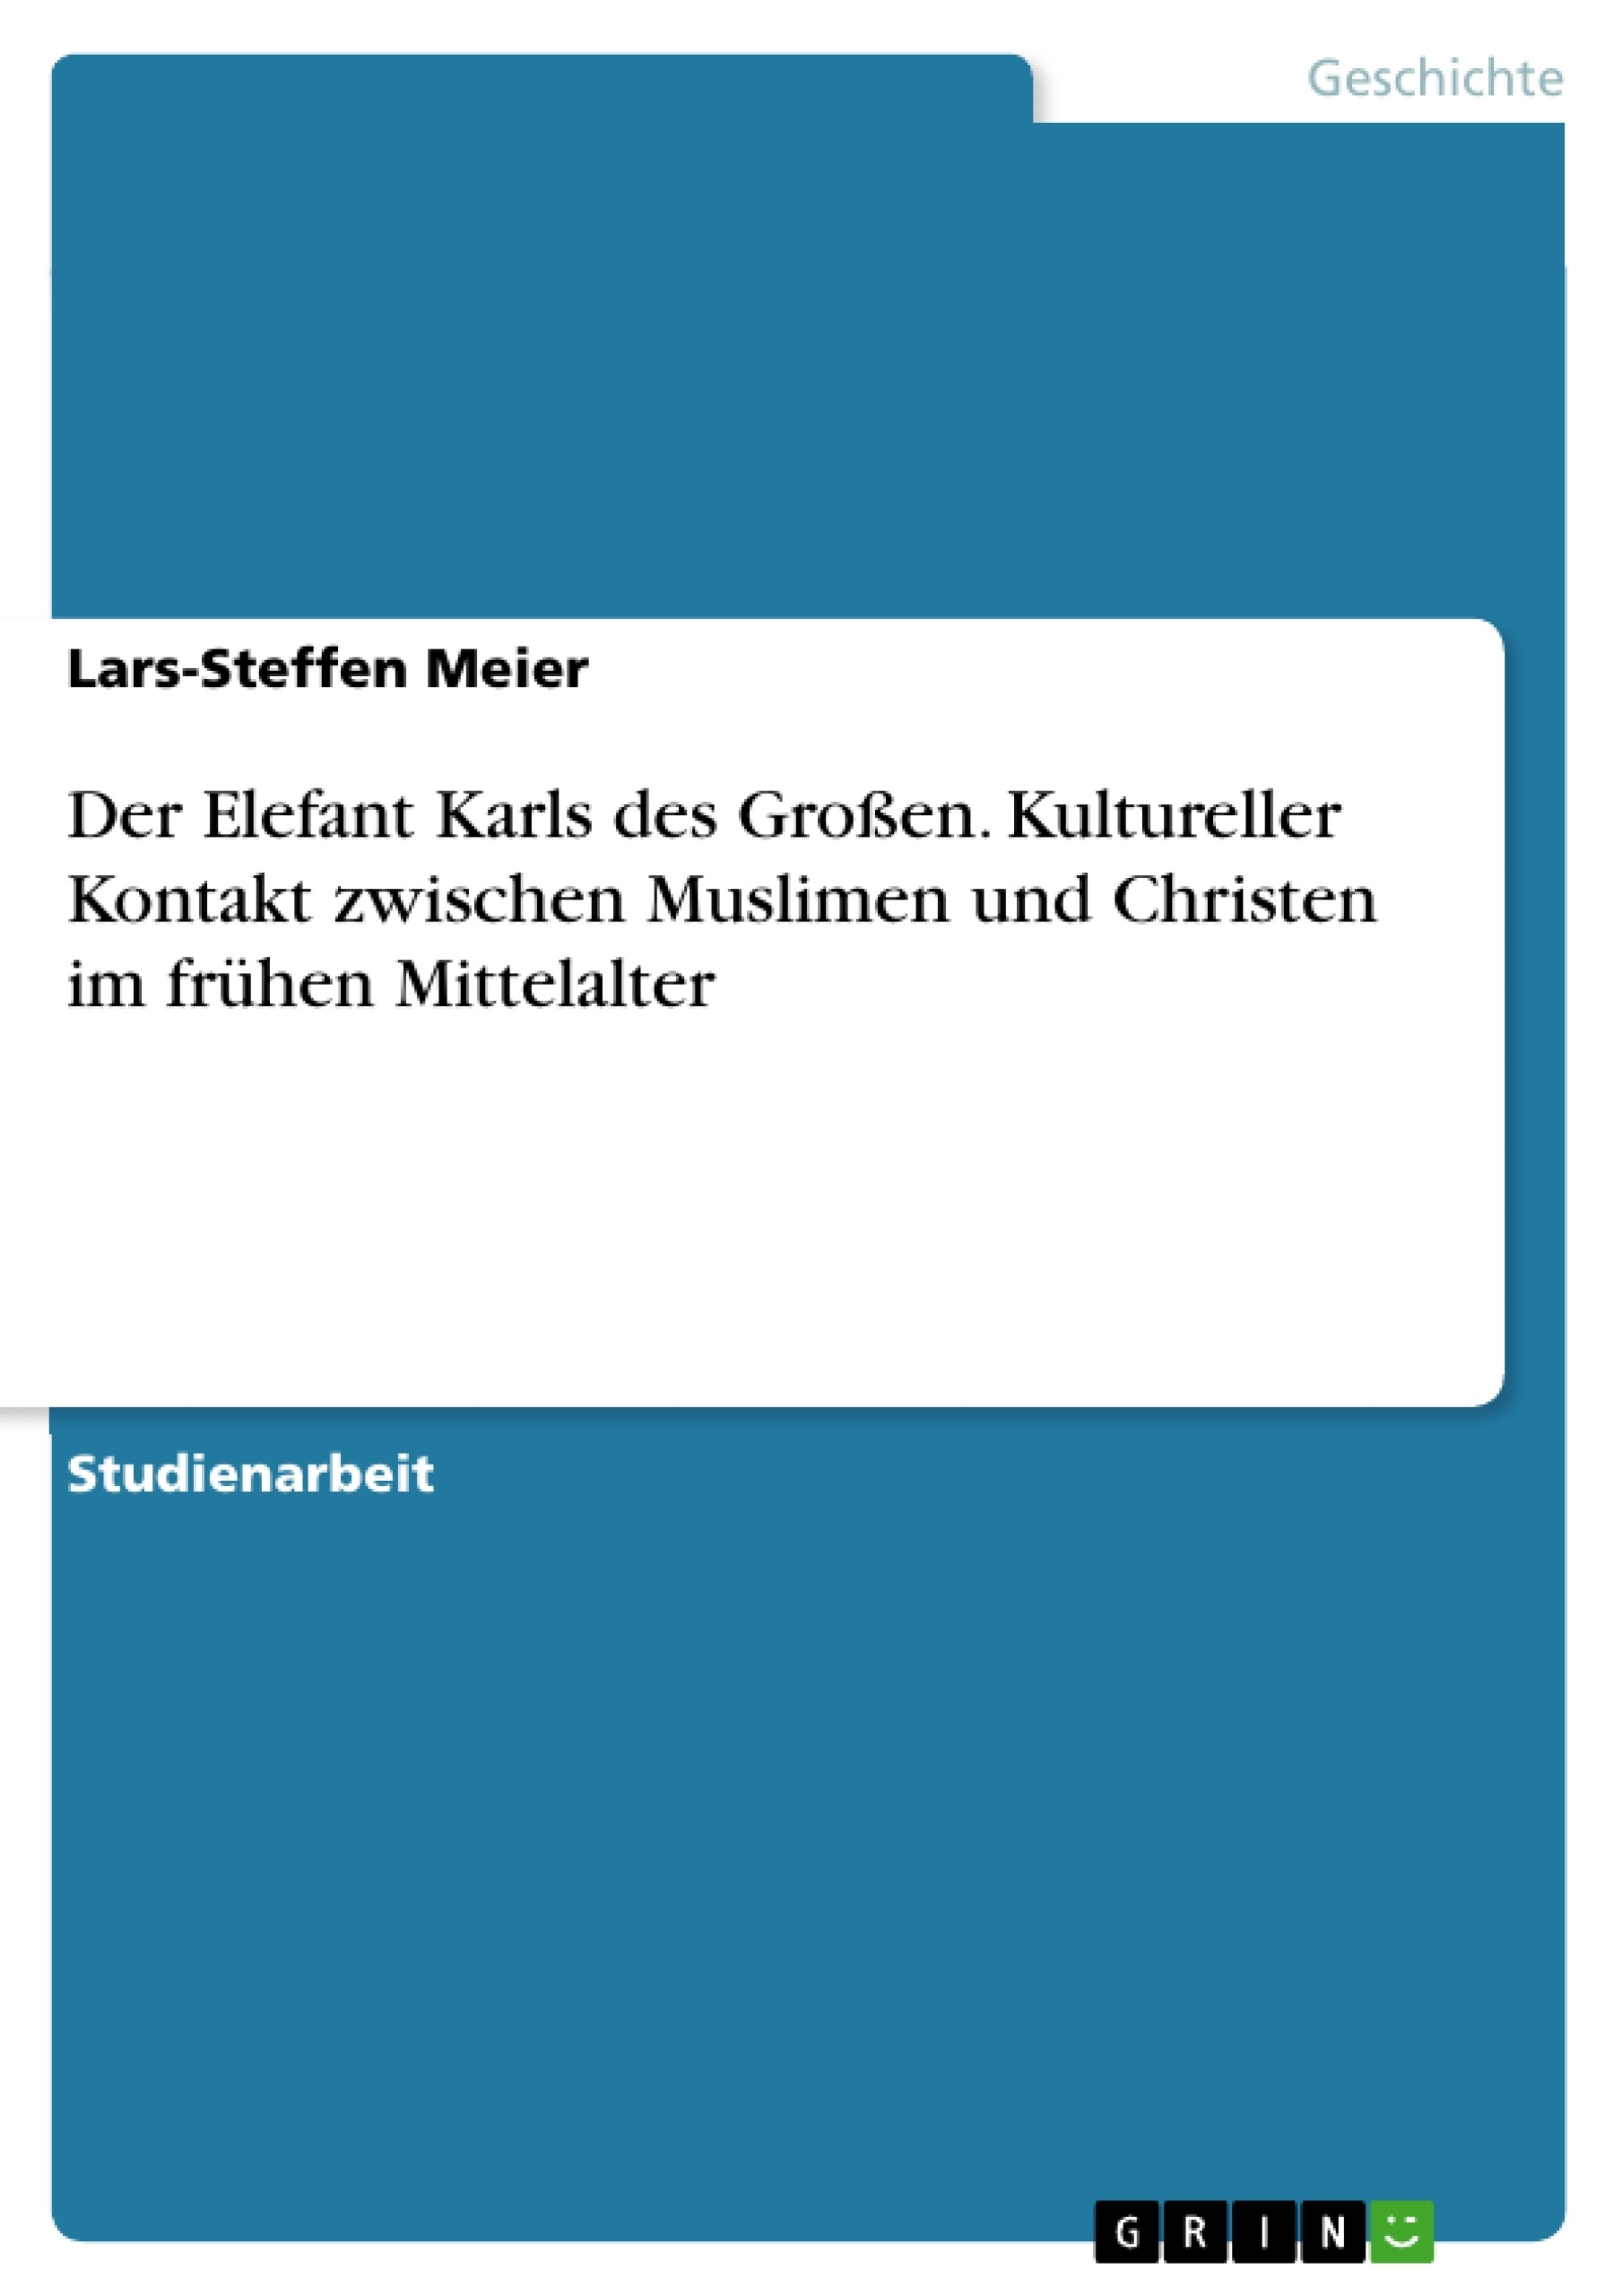 Título: Der Elefant Karls des Großen. Kultureller Kontakt zwischen Muslimen und Christen im frühen Mittelalter